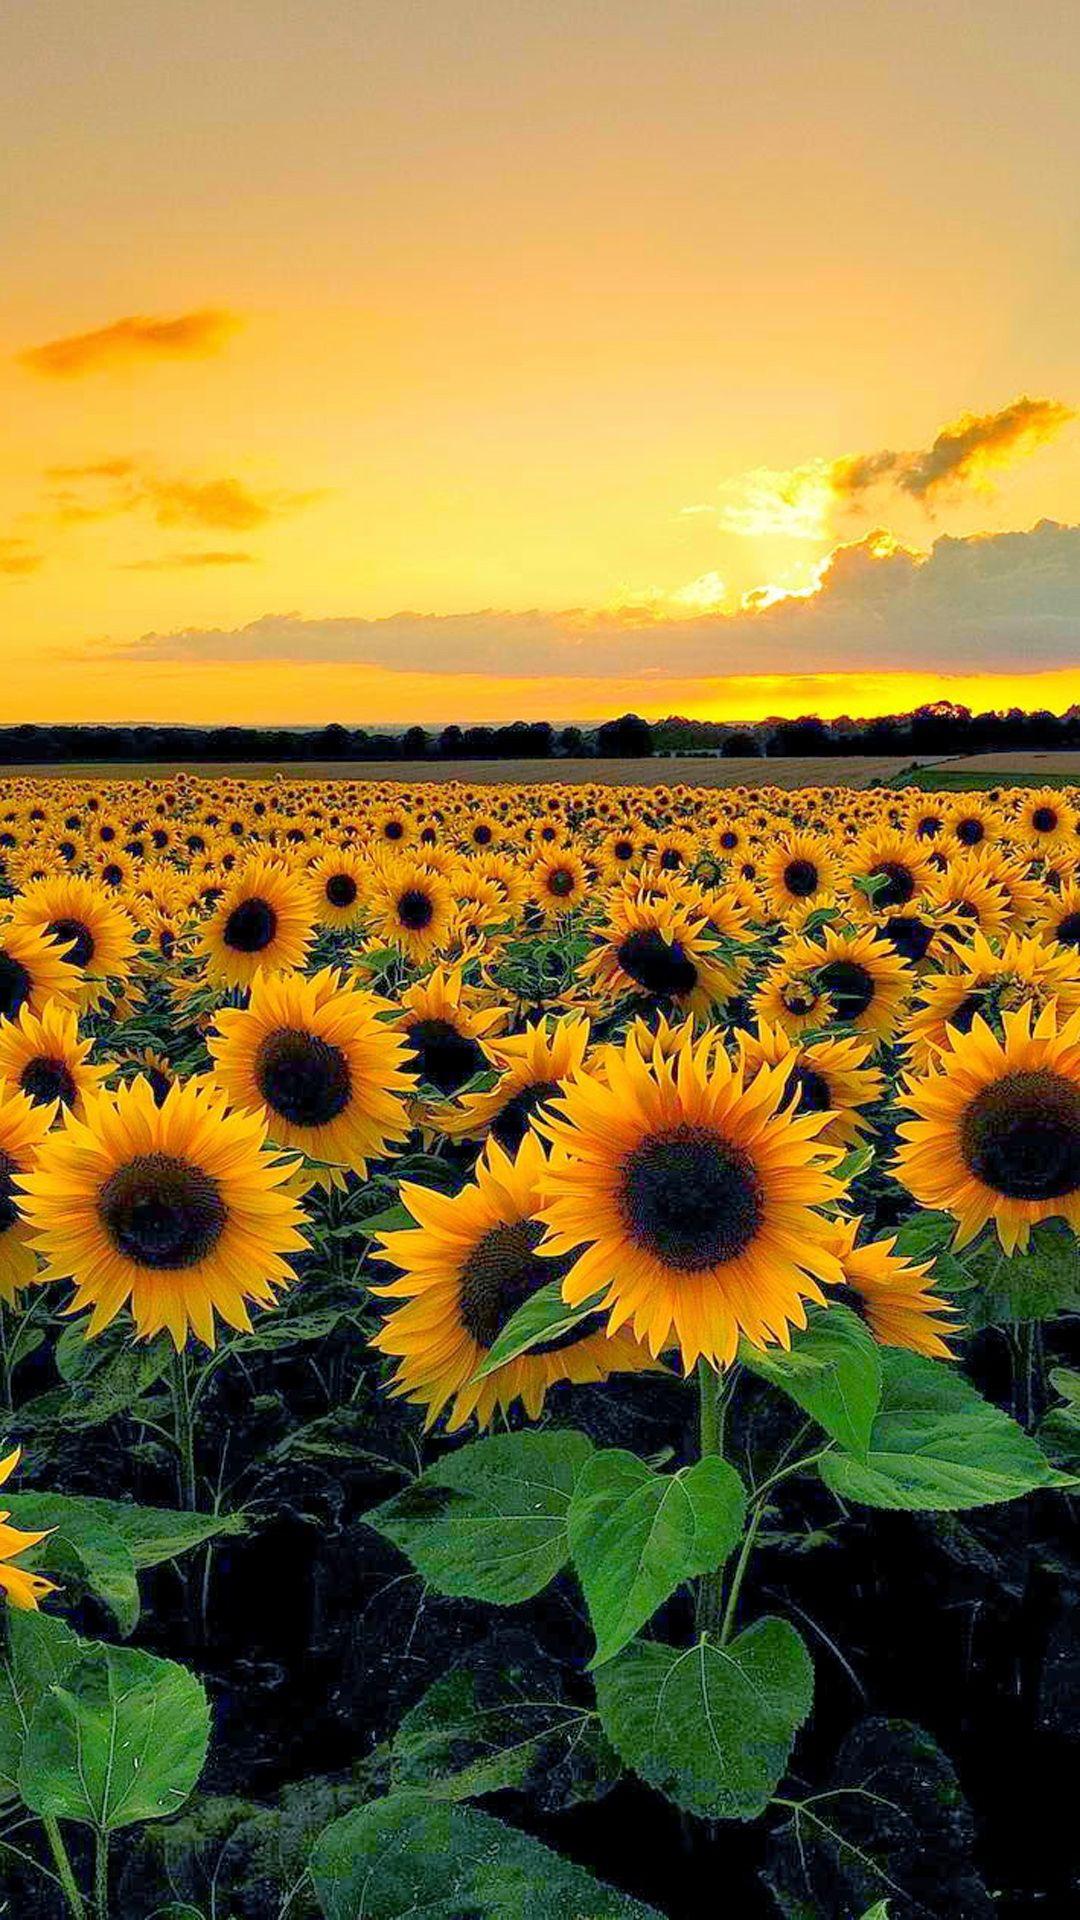 Sunflower wallpaper ideas. Sunflower fields